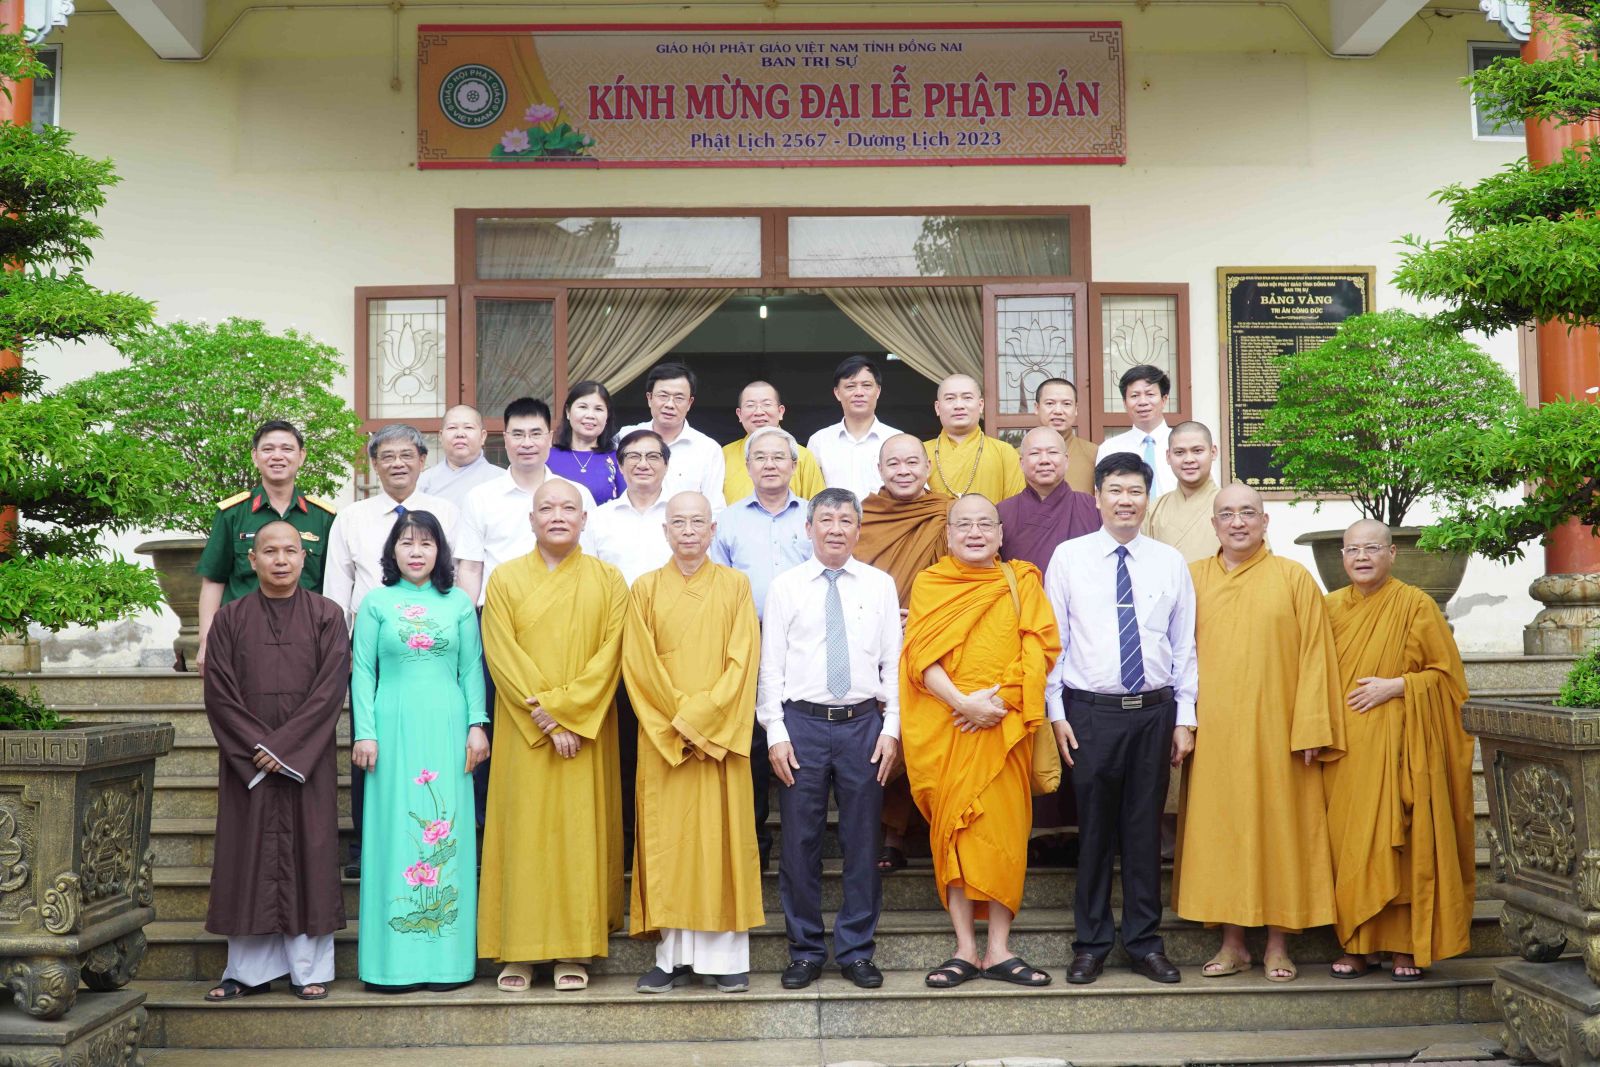 Đồng Nai: Ban Trị sự GHPGVN tỉnh đón tiếp đoàn lãnh đạo Tỉnh Ủy – HĐND – UBND – UBMTTQVN tỉnh thăm và chúc mừng Đại lễ Phật đản PL. 2567 – DL. 2023.